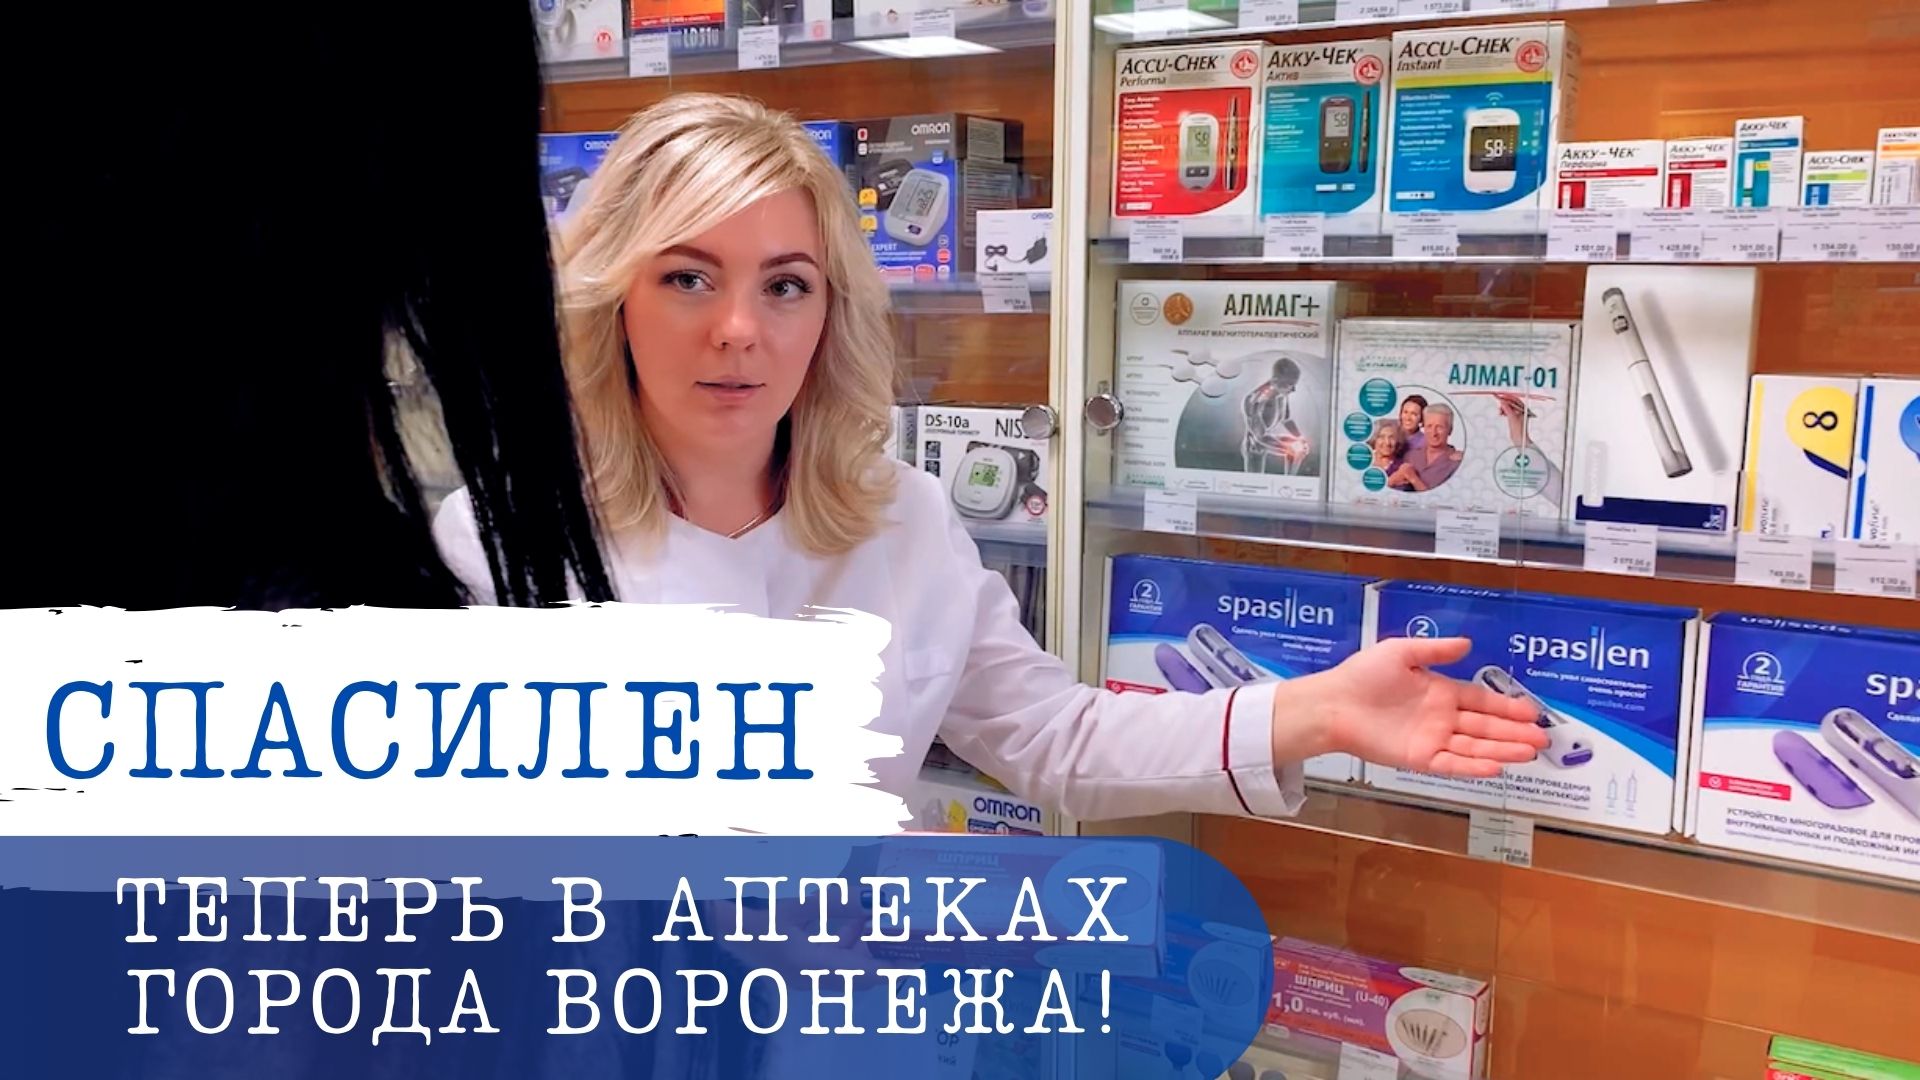 Автоинъектор Спасилен ( Spasilen ) можно приобрести в аптеках города Воронеж